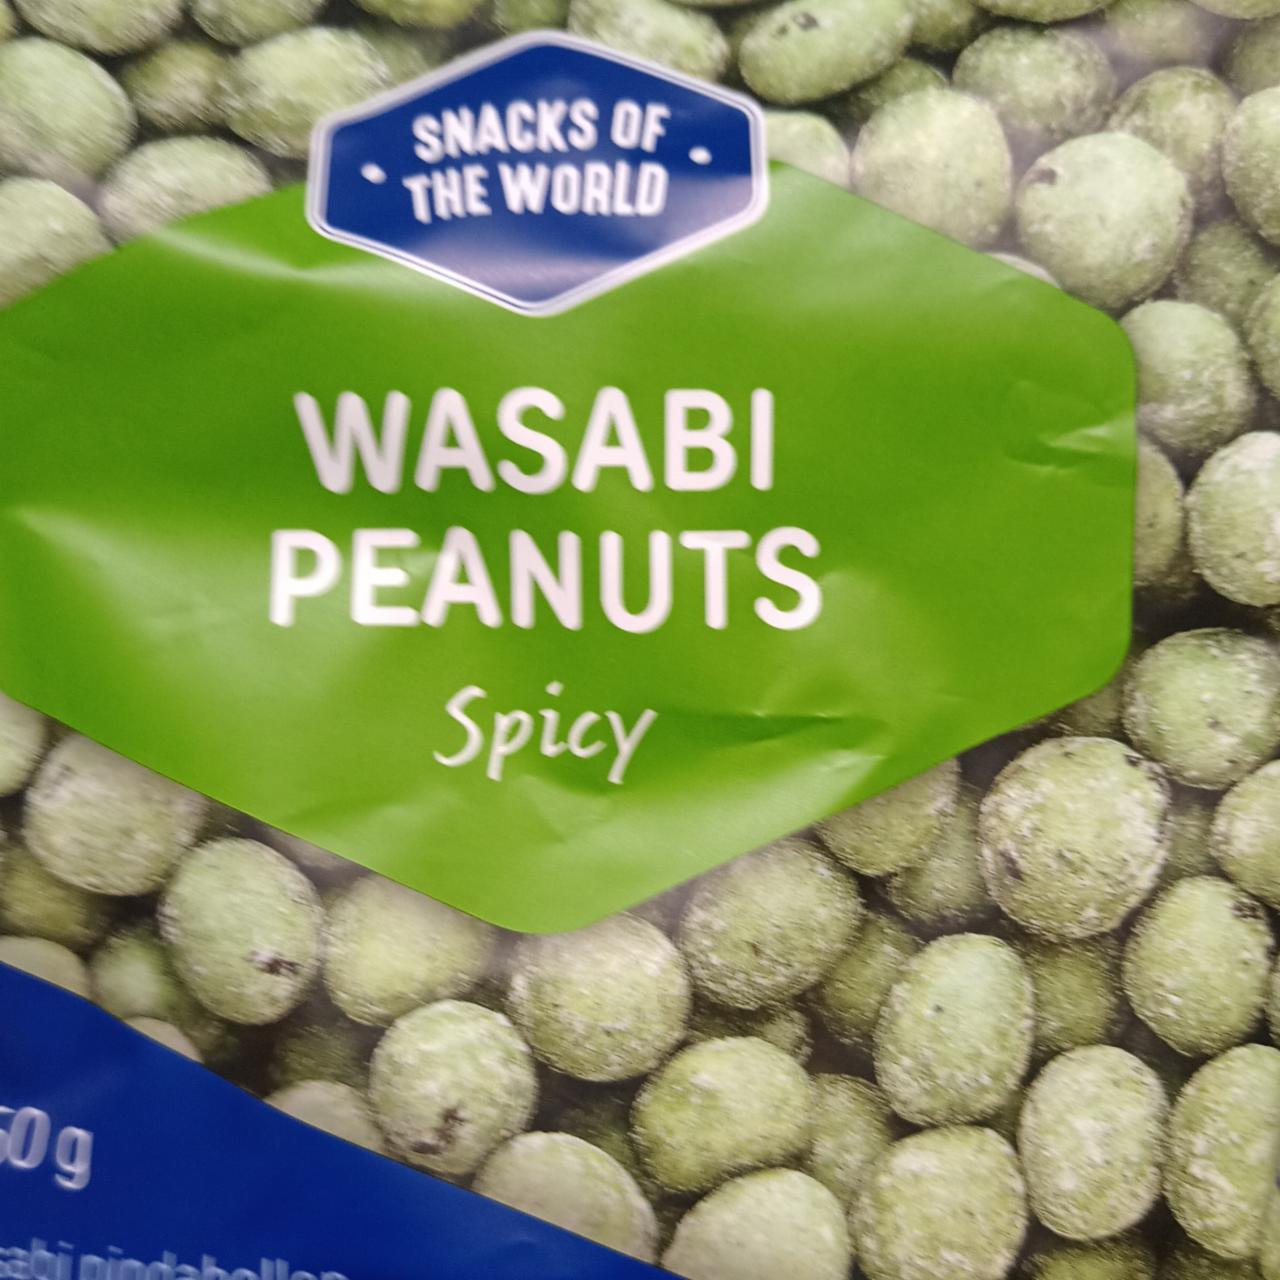 Zdjęcia - wasabi peanuts spicy Snacks of the world